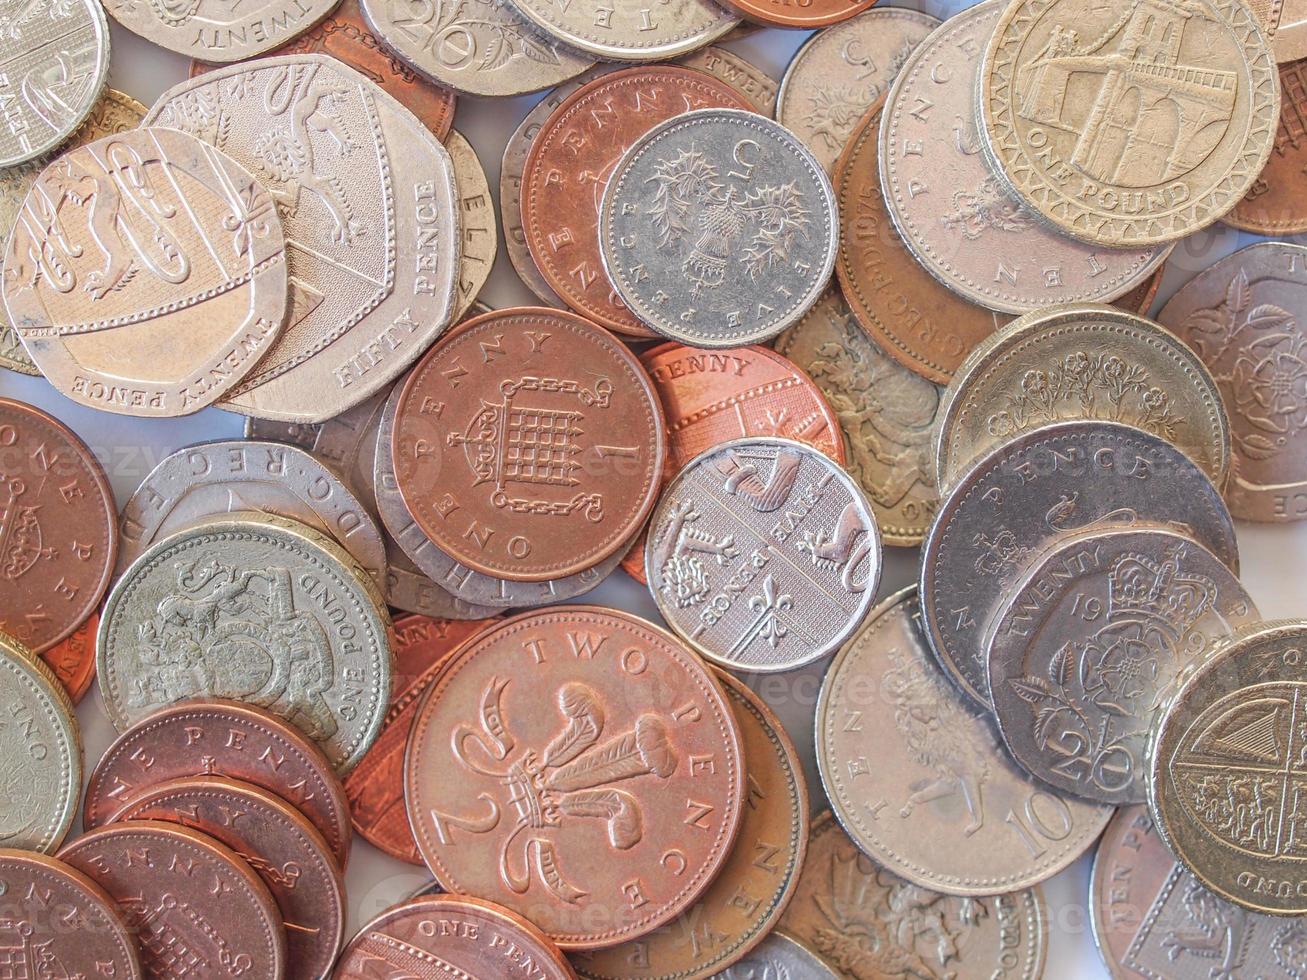 britische Pfundmünze foto